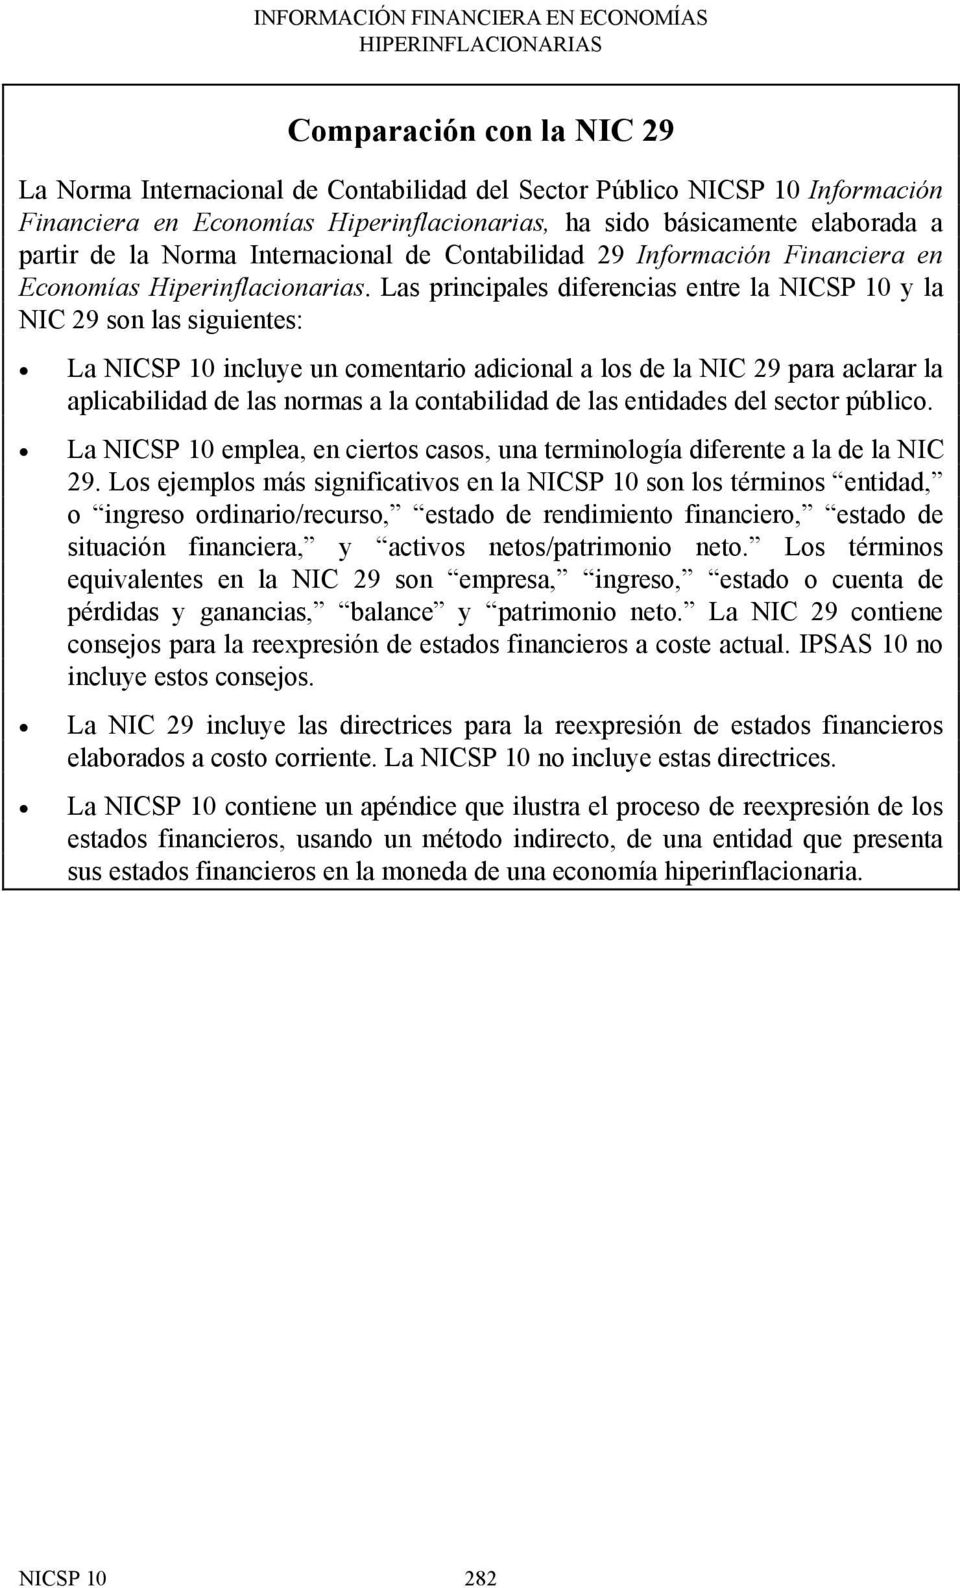 Las principales diferencias entre la NICSP 10 y la NIC 29 son las siguientes: La NICSP 10 incluye un comentario adicional a los de la NIC 29 para aclarar la aplicabilidad de las normas a la